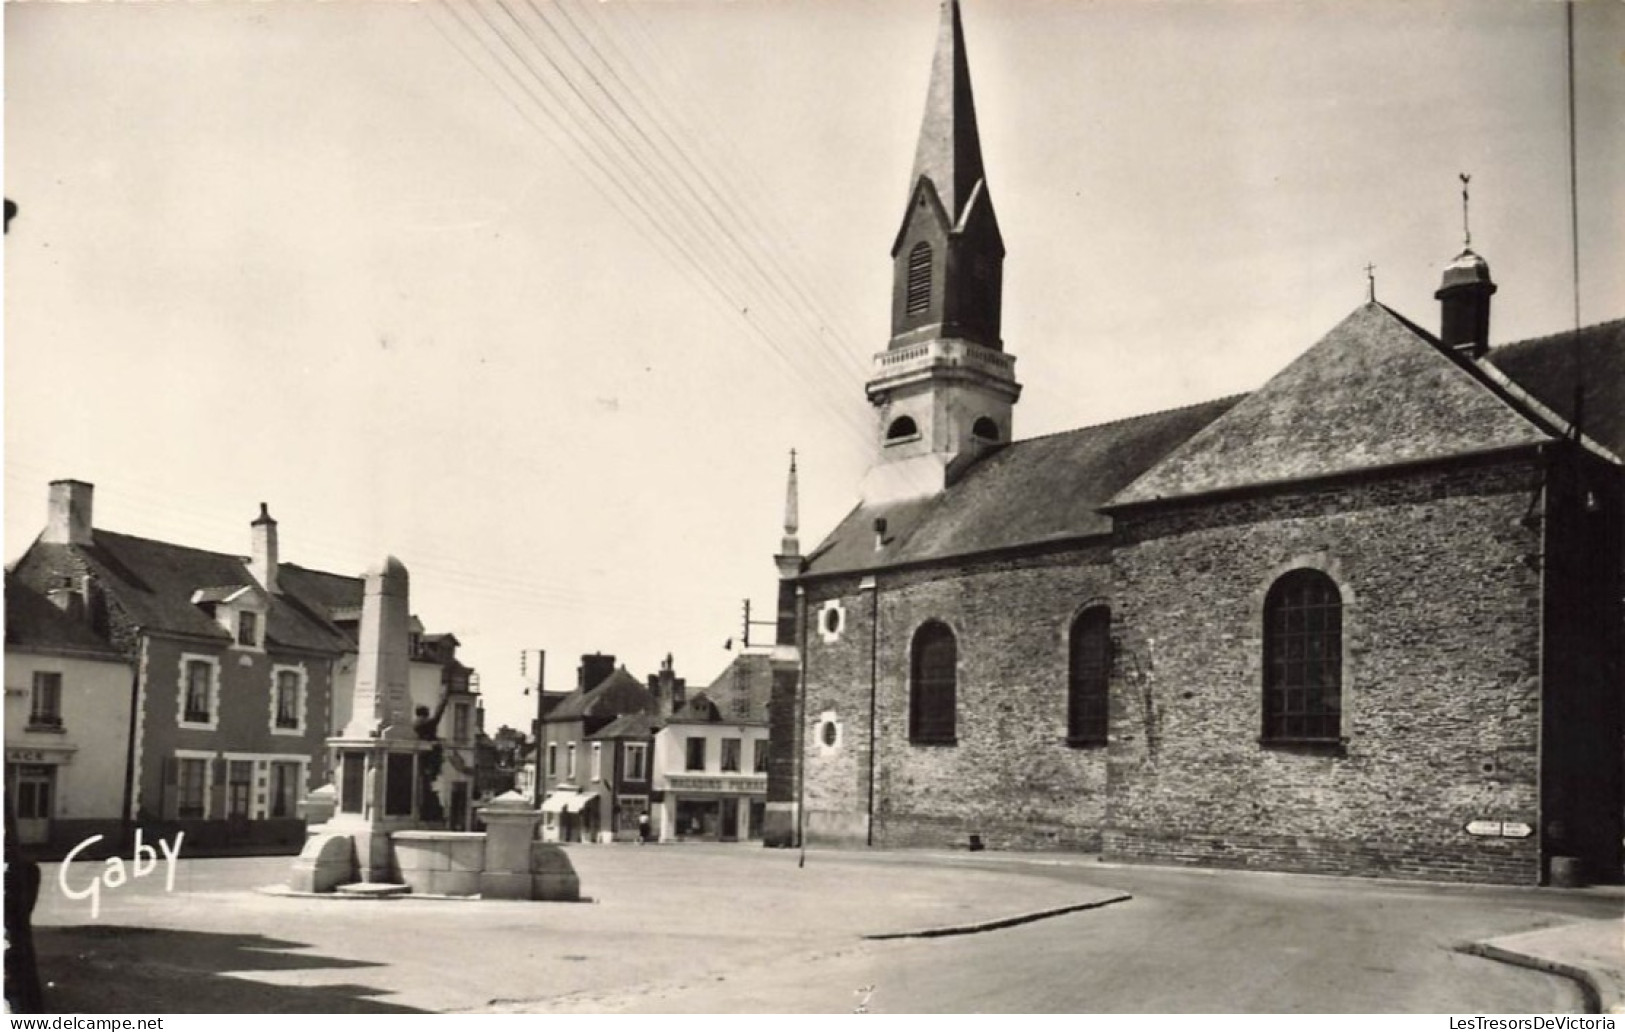 FRANCE - Guer - La Place De L'église - Carte Postale Ancienne - Guer Coetquidan